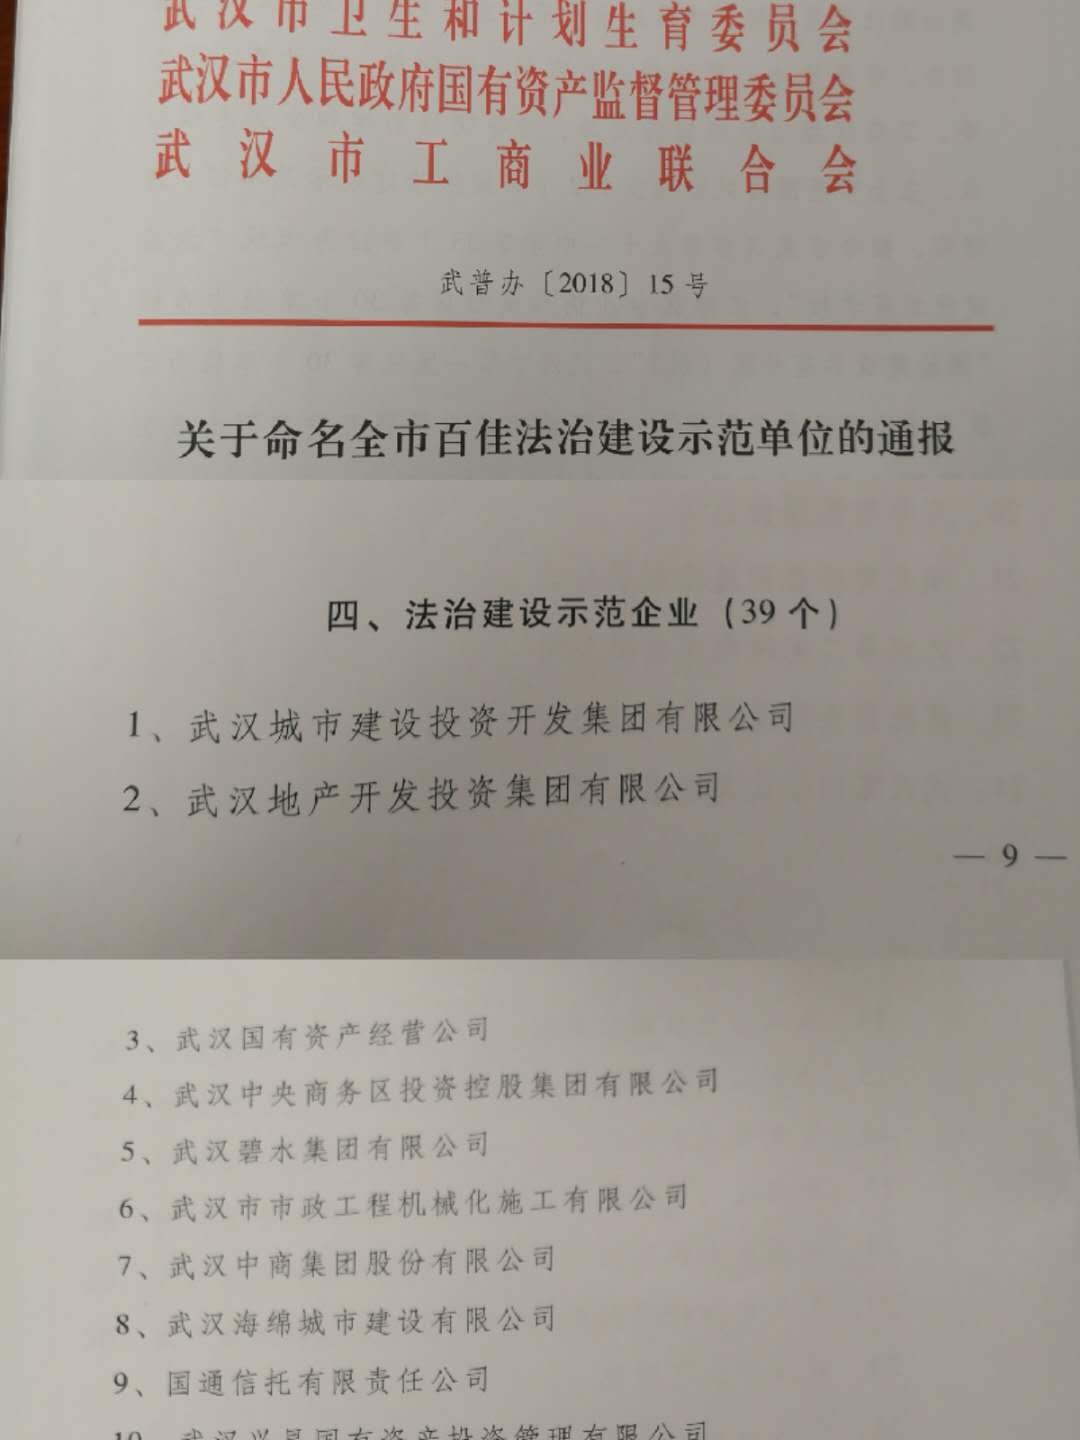 商务区集团荣获武汉市“法治建设示范企业”